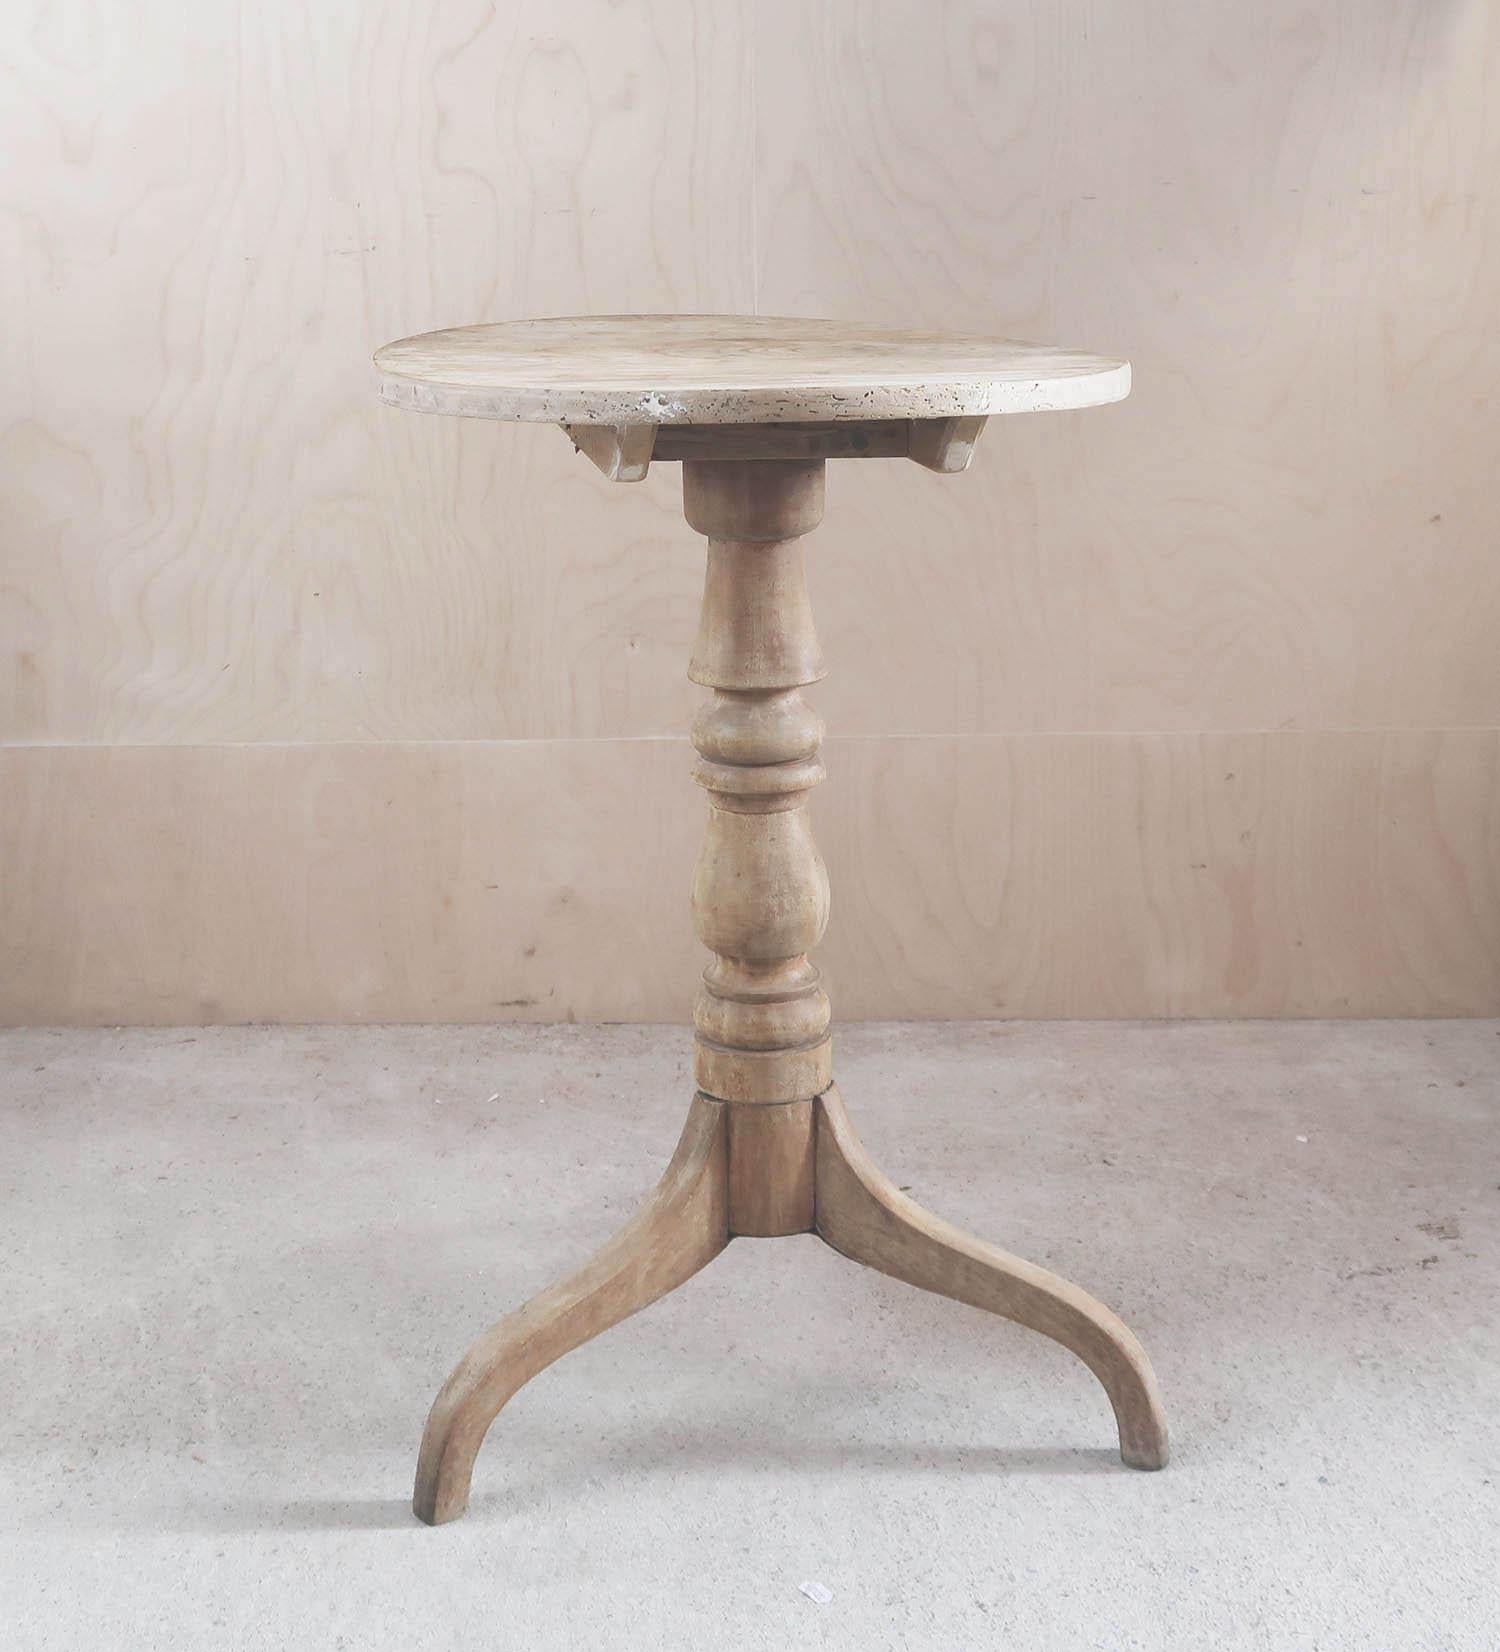 Fabelhafter kleiner runder georgianischer Tisch. Hergestellt aus gebleichter Ulme

Schön geformte Spitze

Ich mag besonders die Schlichtheit und die Form der Beine 

Ich habe mich entschieden, den Tisch nicht zu lackieren oder zu wachsen.

Die